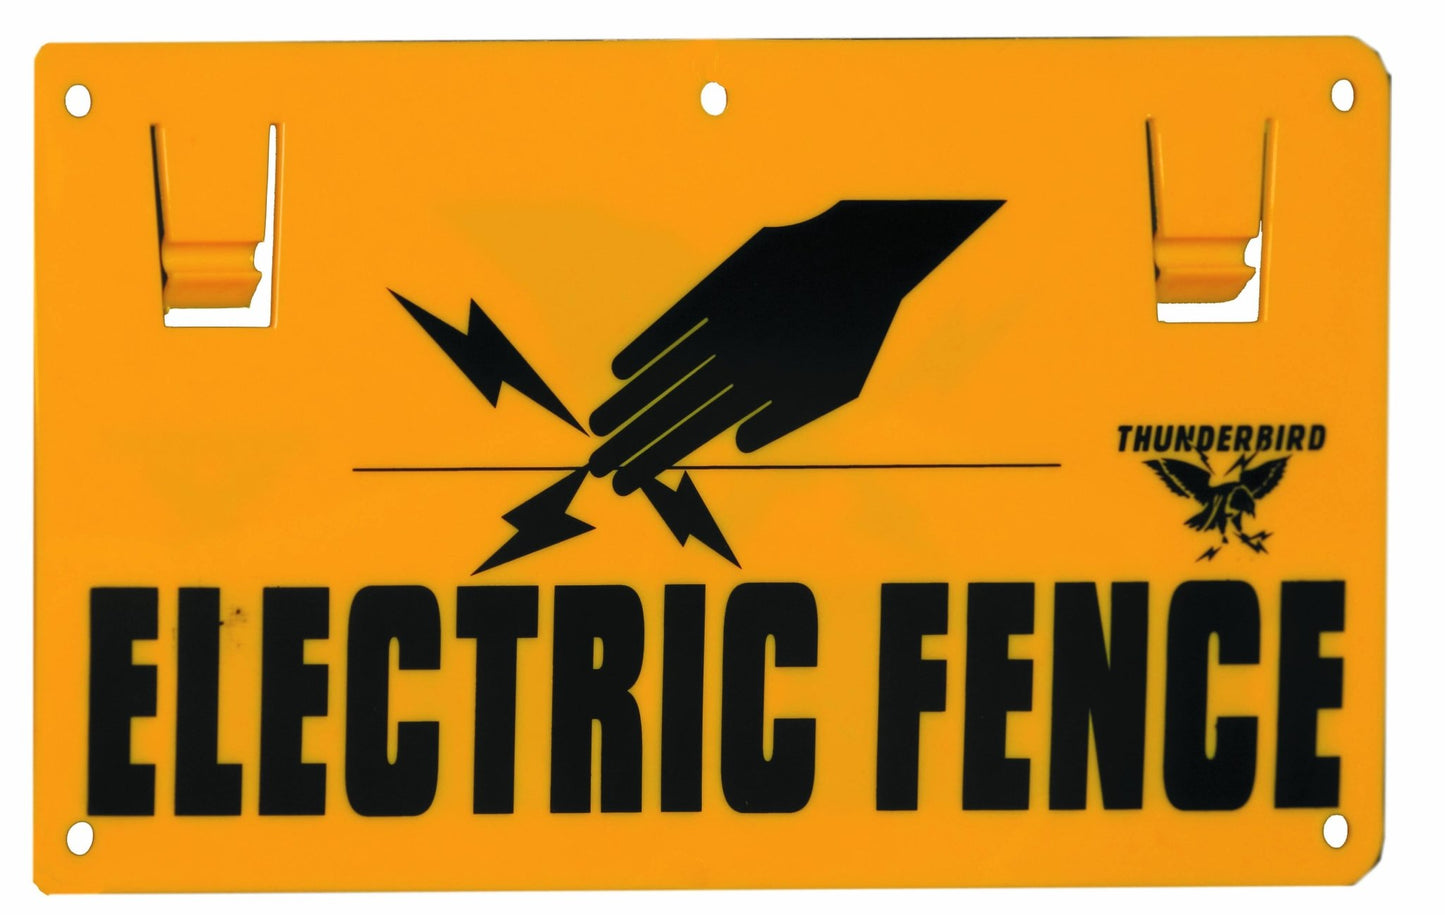 Thunderbird Sign Electric Fence EF-15 - Woonona Petfood & Produce